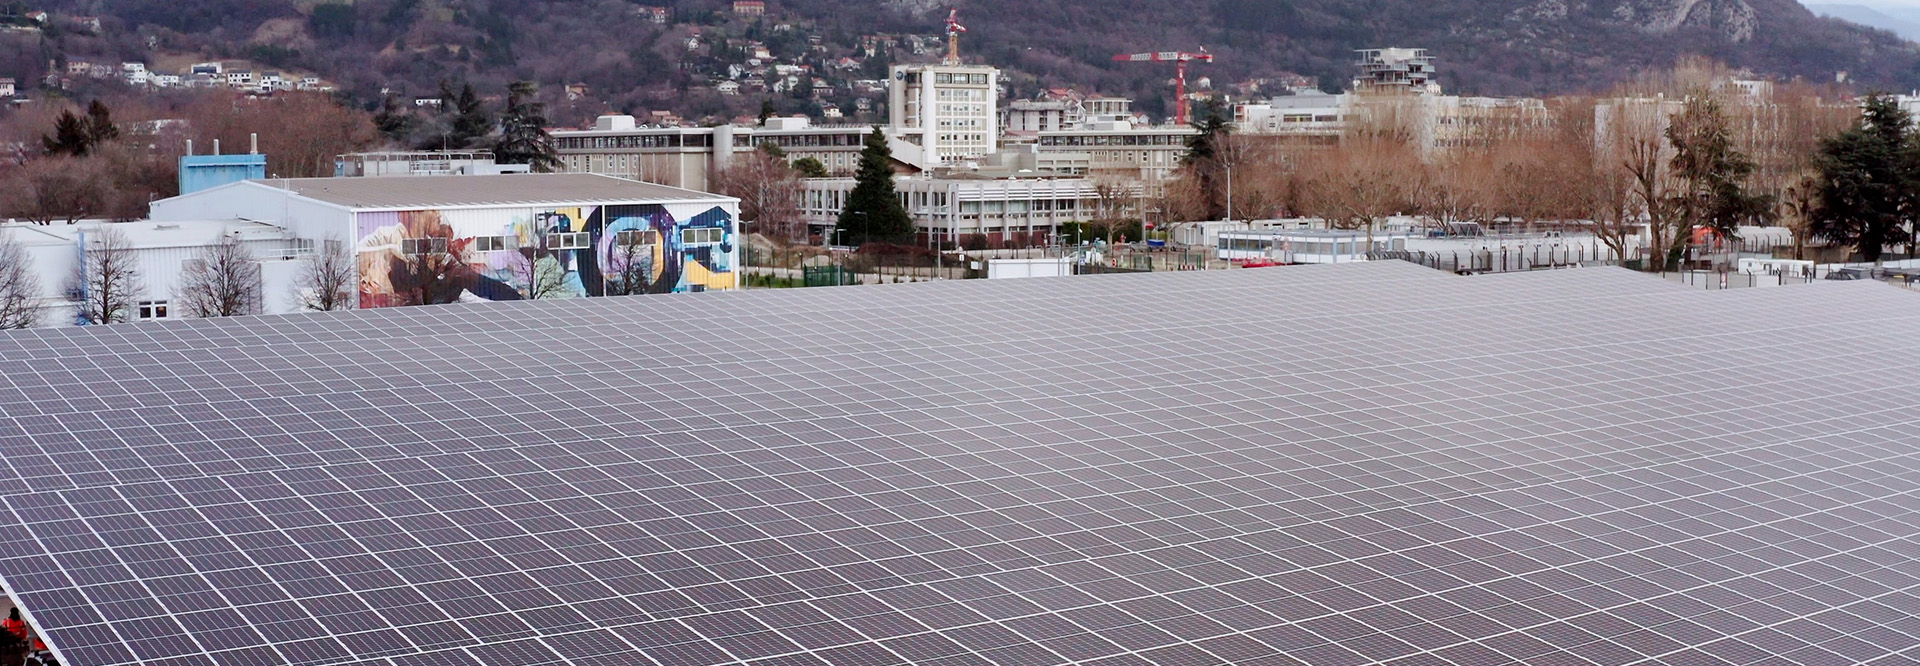 New photovoltaic carpark, ST Grenoble, France